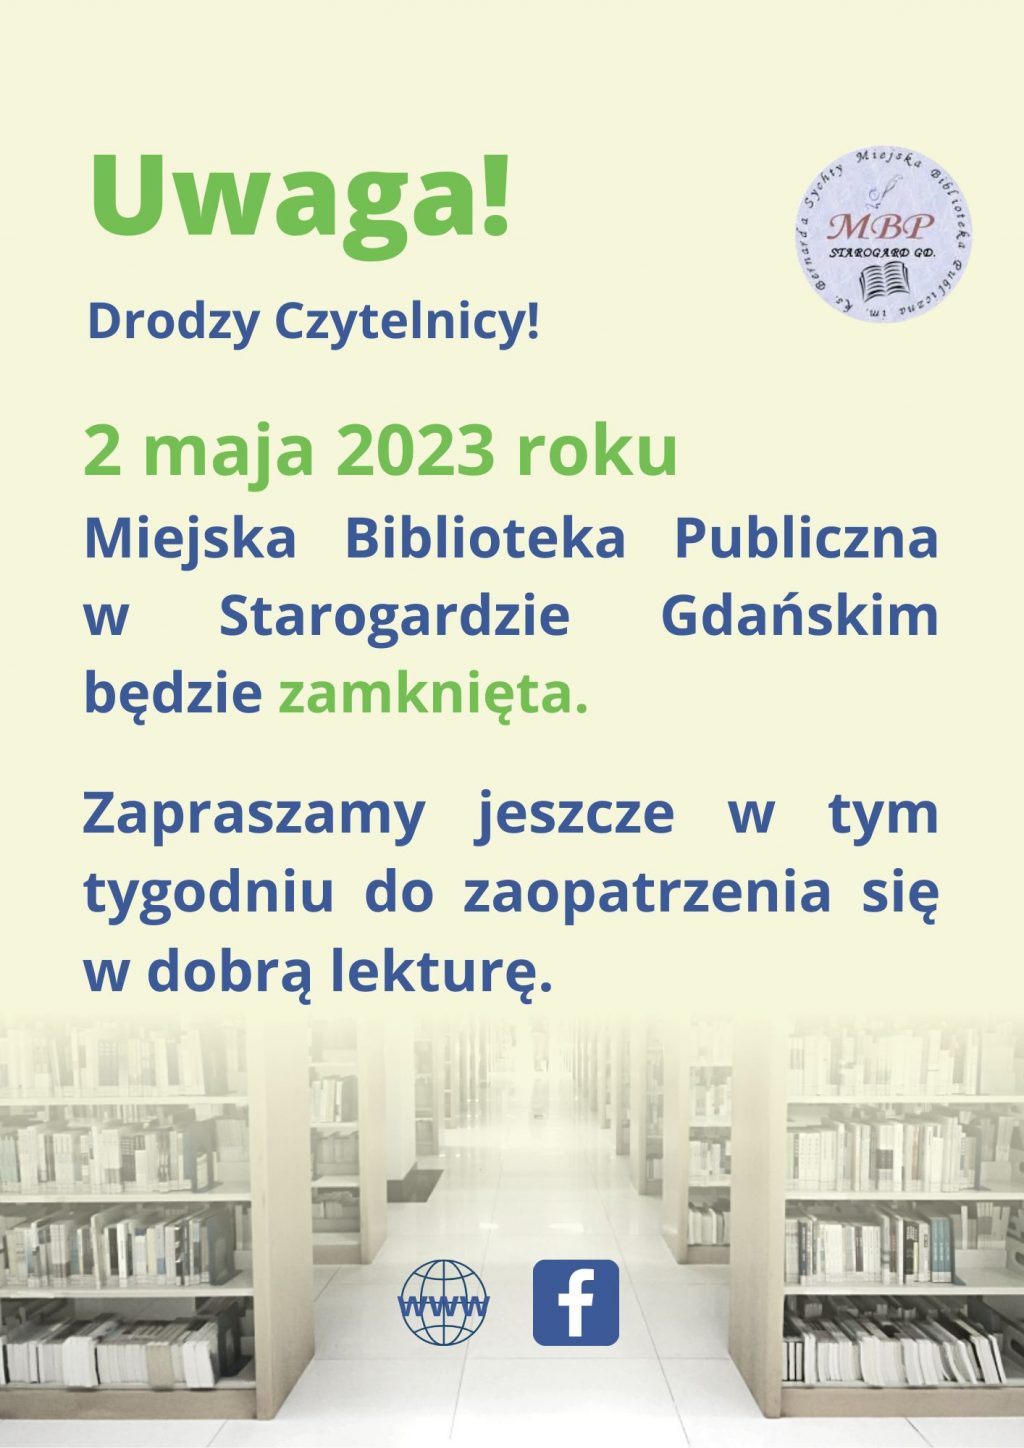 Plakat informujący, że 2 maja 2023 roku Miejska Biblioteka Publiczna w Starogardzie Gdańskim będzie zamknięta.